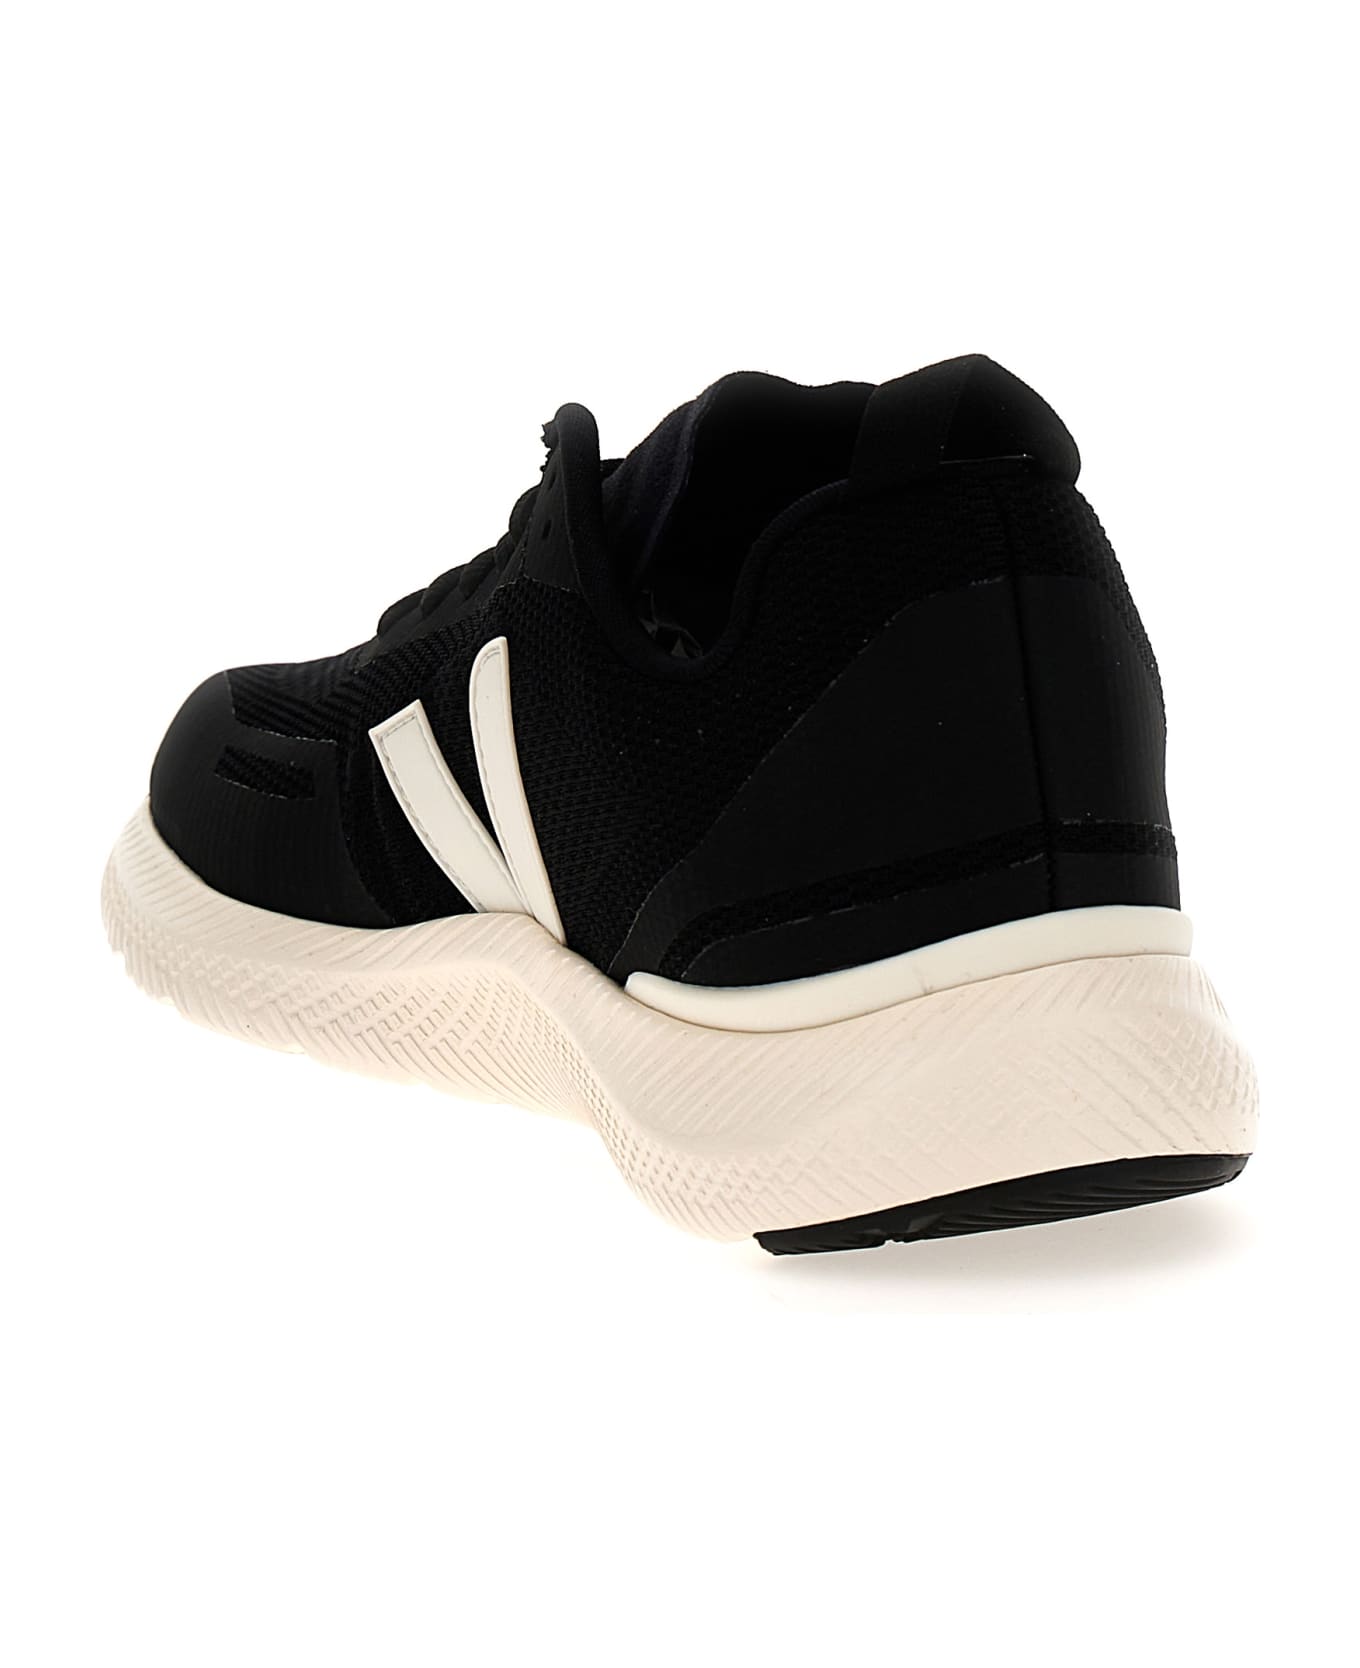 Veja 'impala' Sneakers - White/Black スニーカー